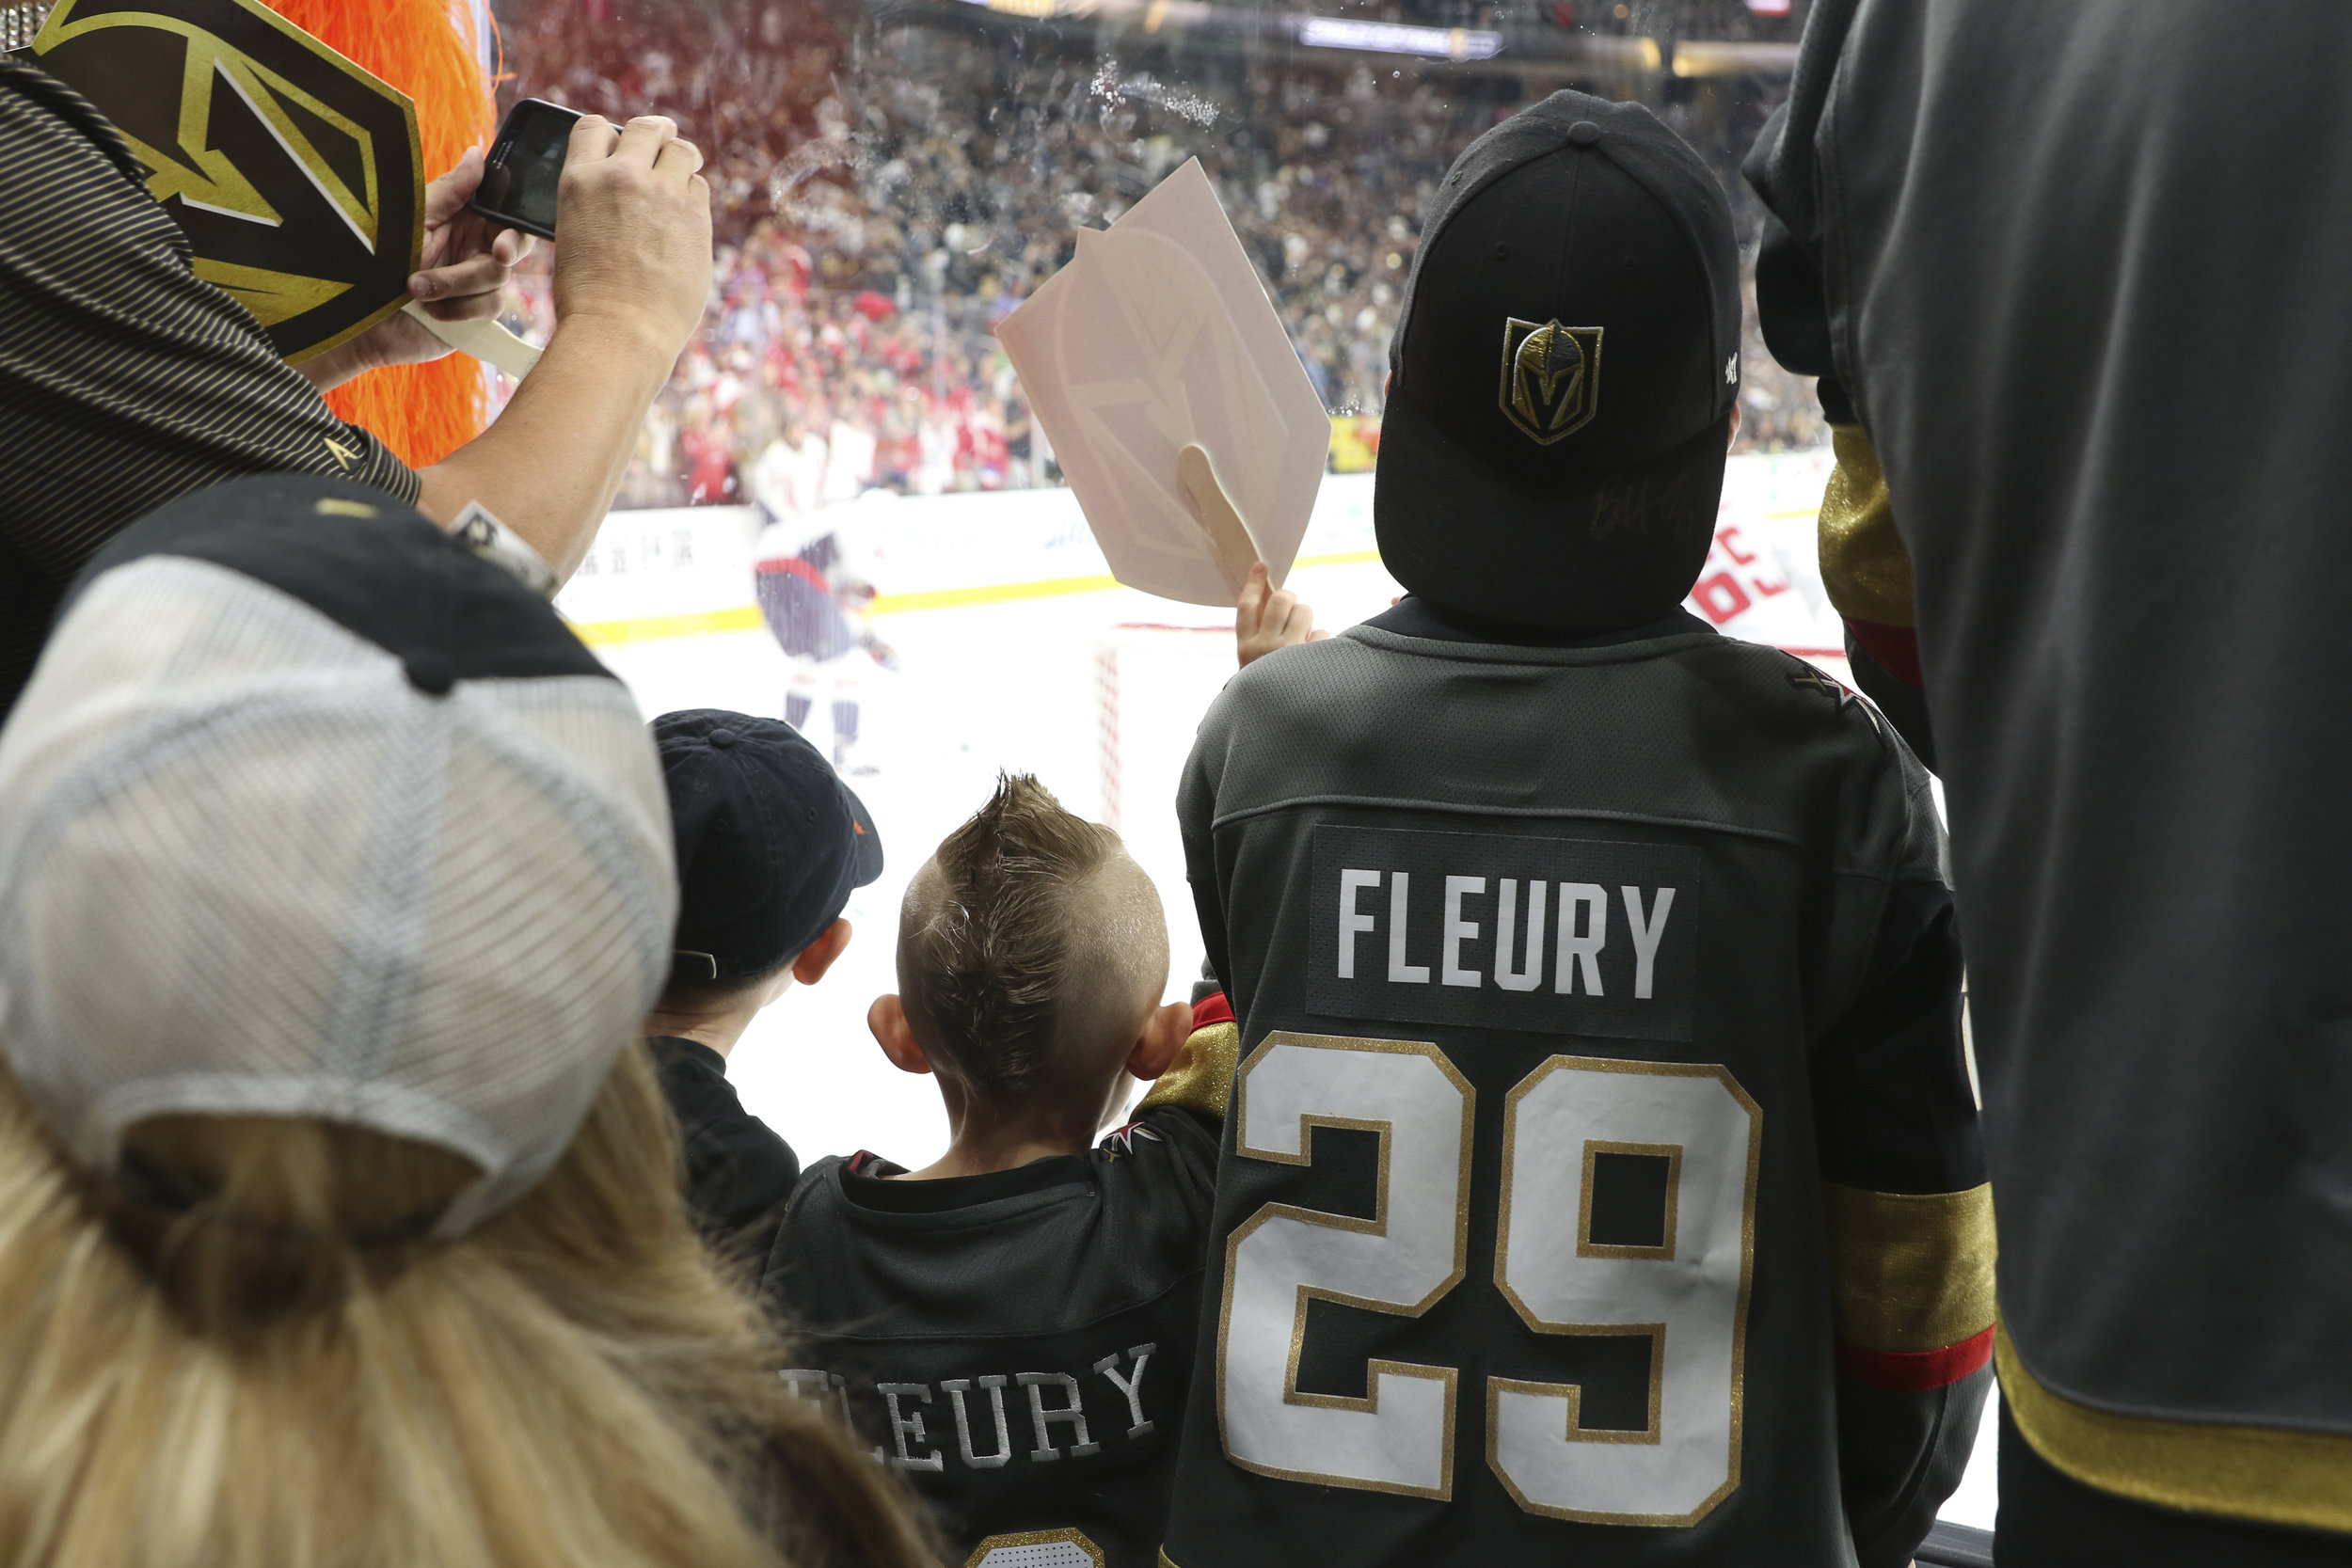 Marc-Andre Fleury Jerseys & Gear in NHL Fan Shop 